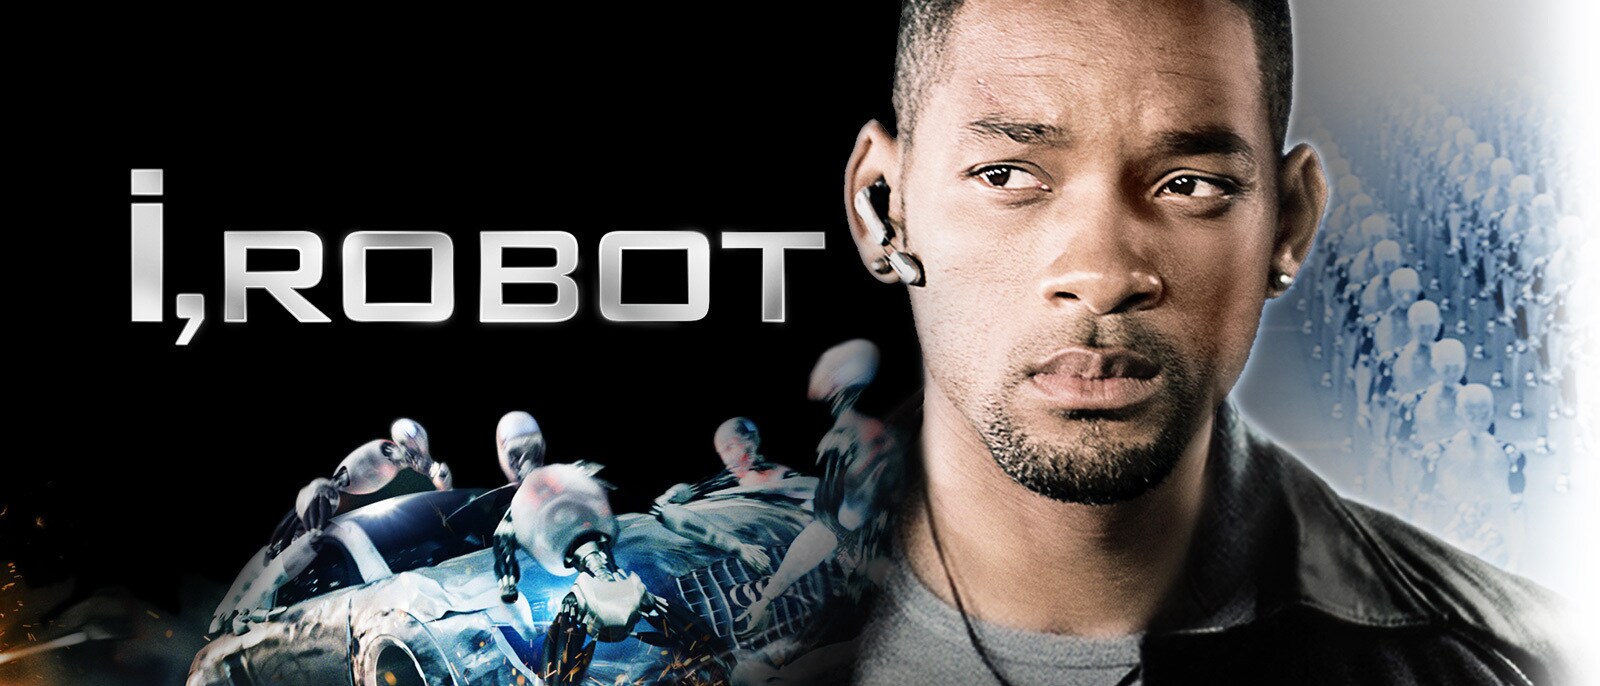 I, Robot (2004) - IMDb